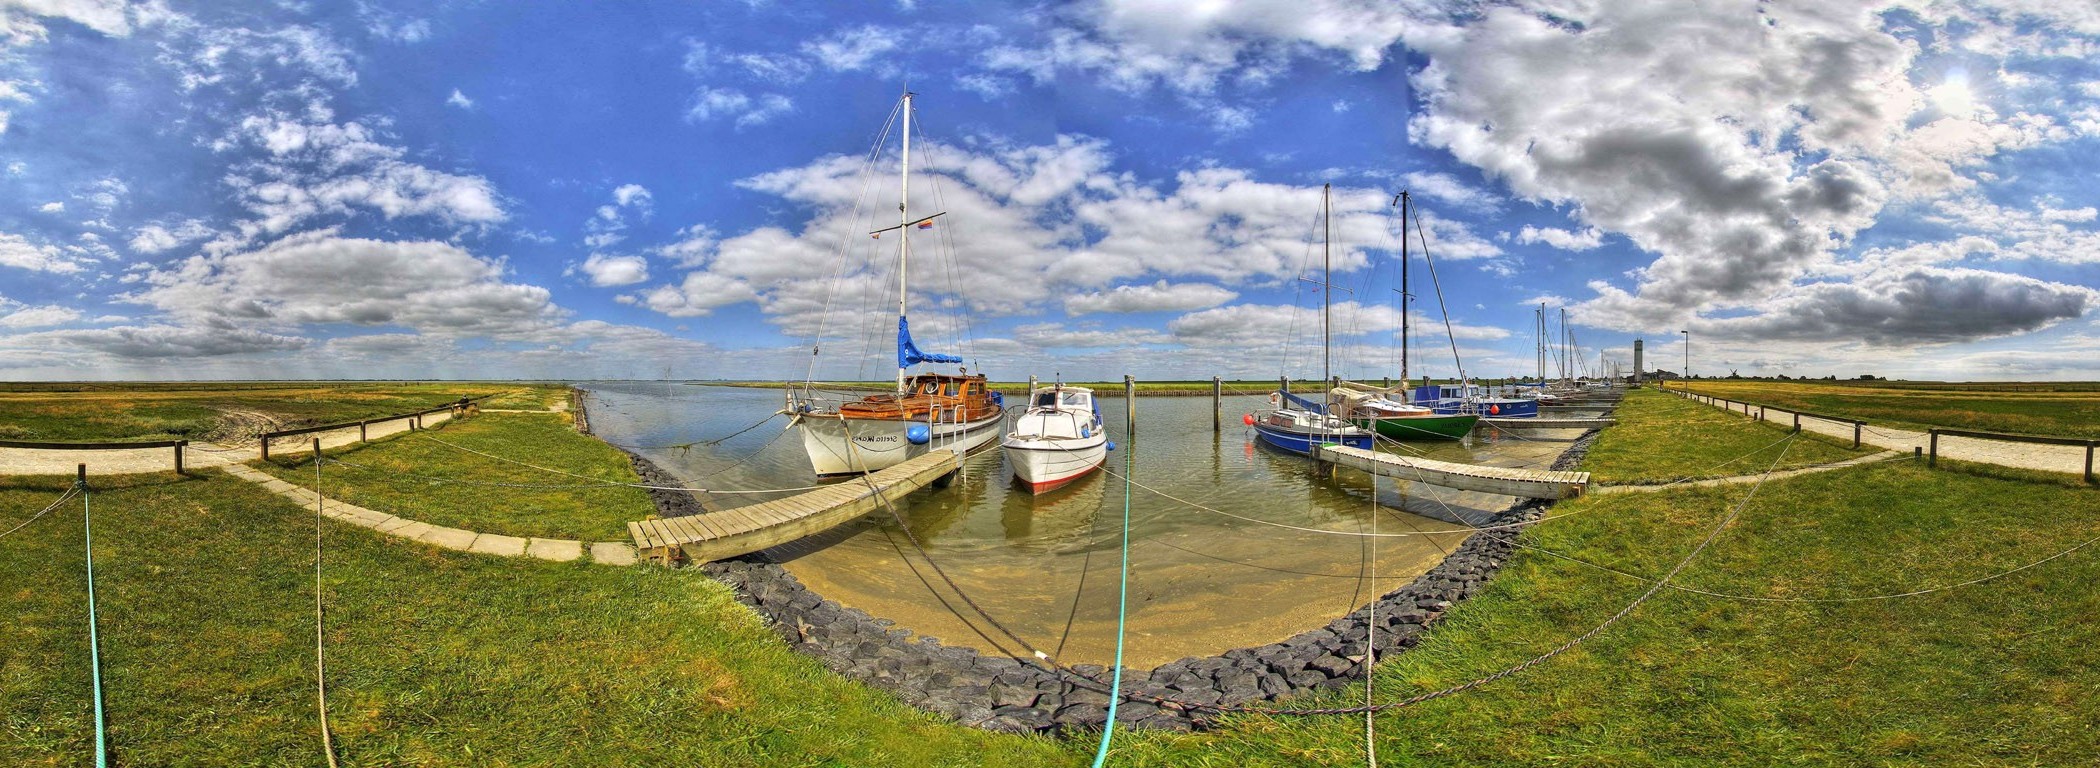 landscape, Fisheye Lens, Boat Wallpaper